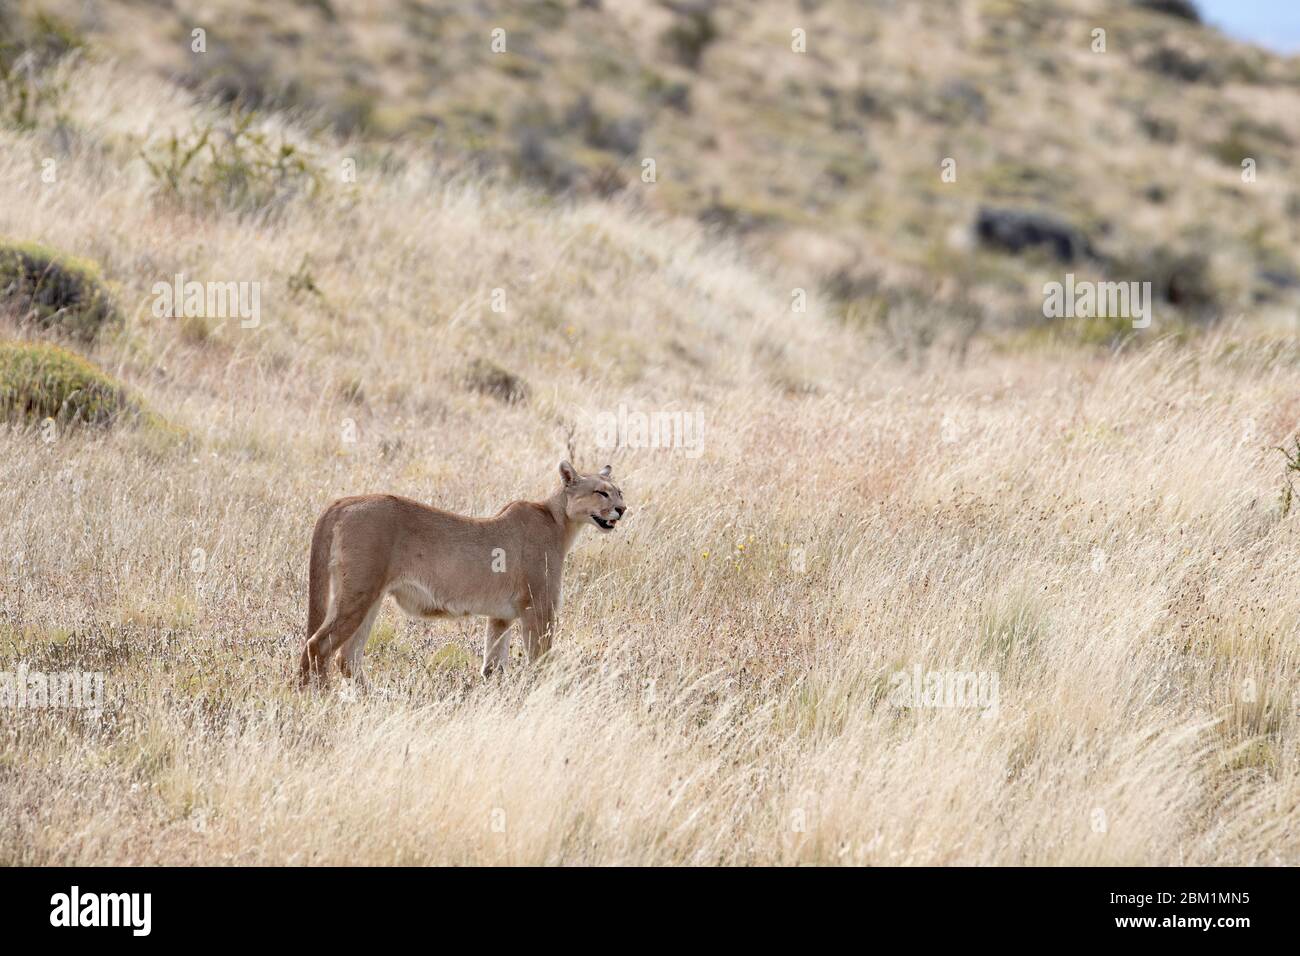 Puma mère appelant ses petits dans l'herbe courte sur un côté de colline. Également appelé cougar ou lion de montagne. Banque D'Images